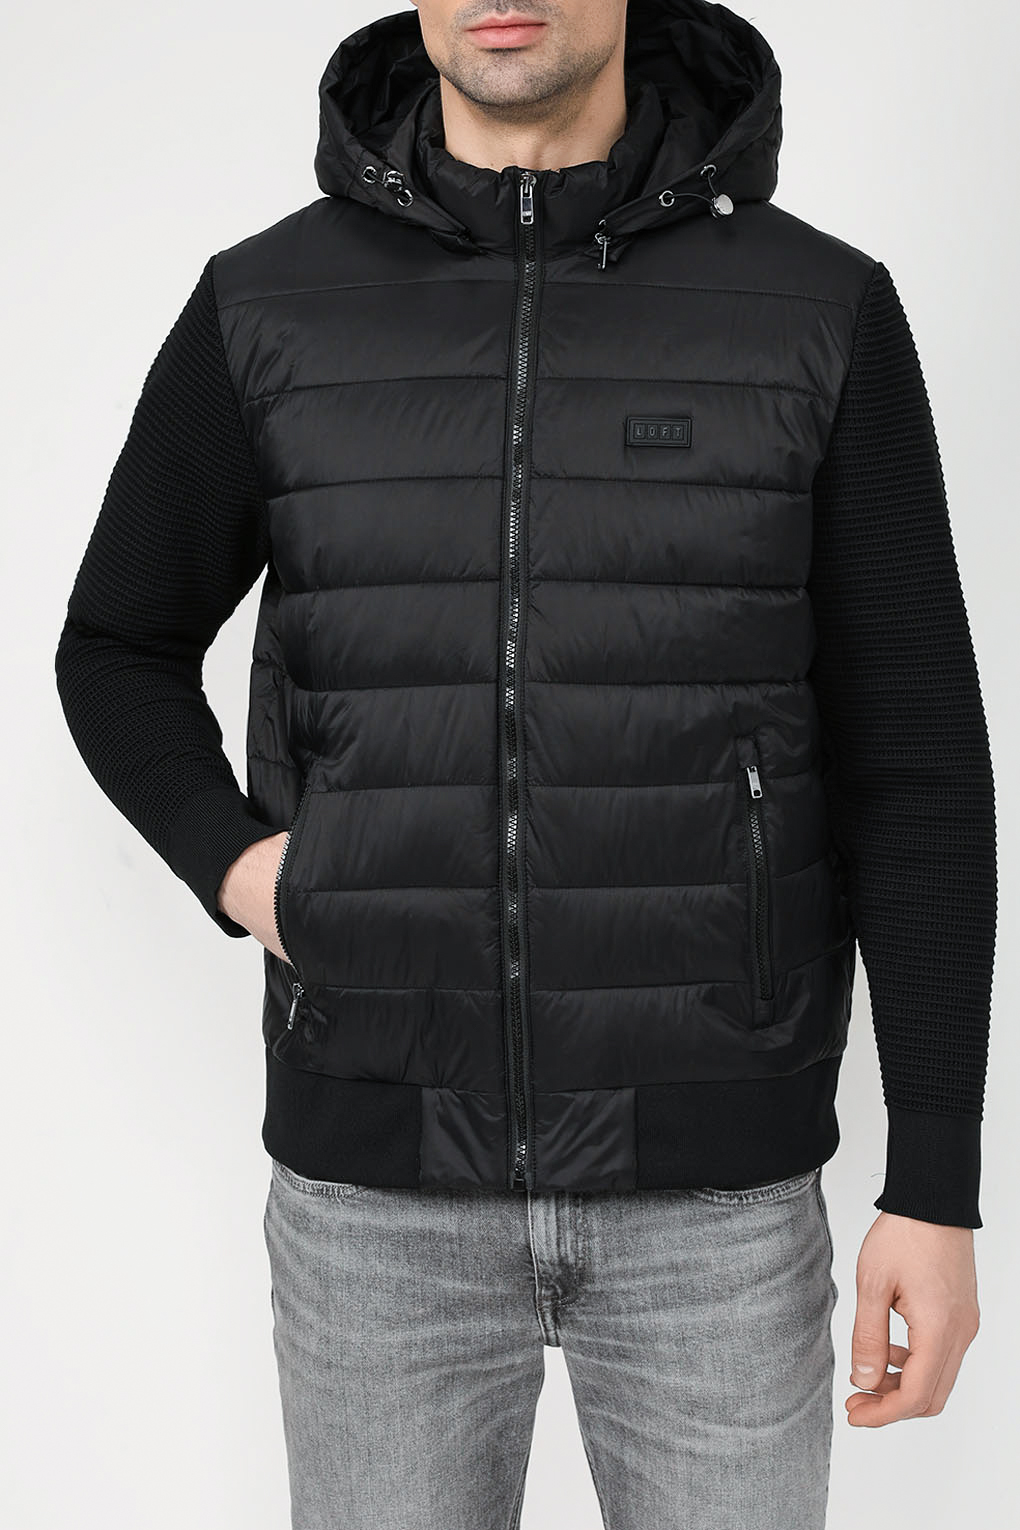 Куртка мужская Loft LF2033657 черная S